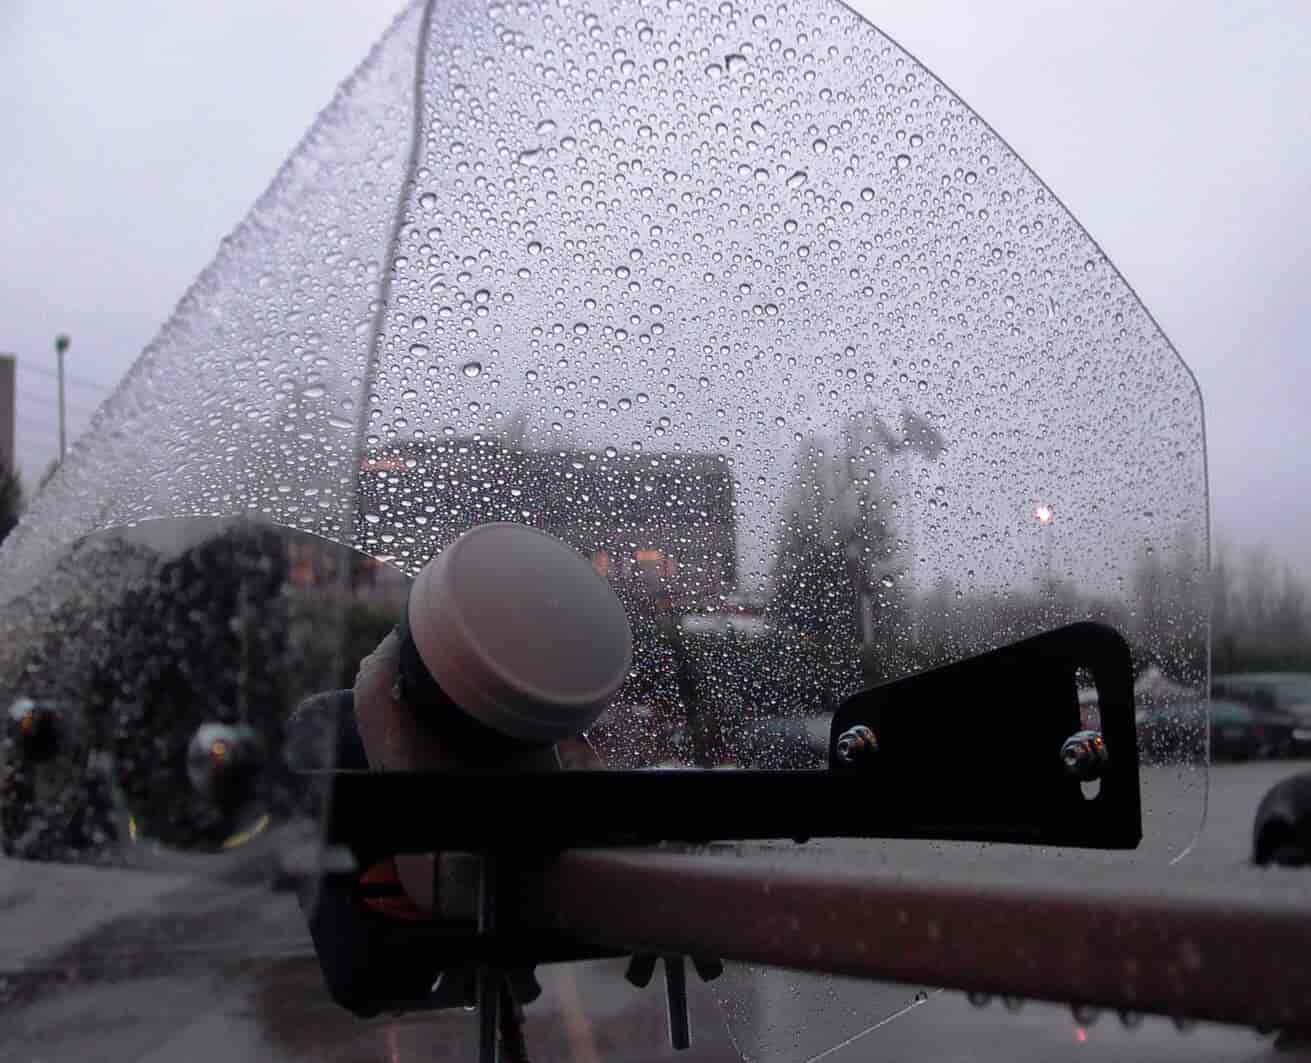 LNB cover (paraply) Slip for at skulle fjerne sne fra LNB hovedet, det er nemt, billigt og hurtigt.